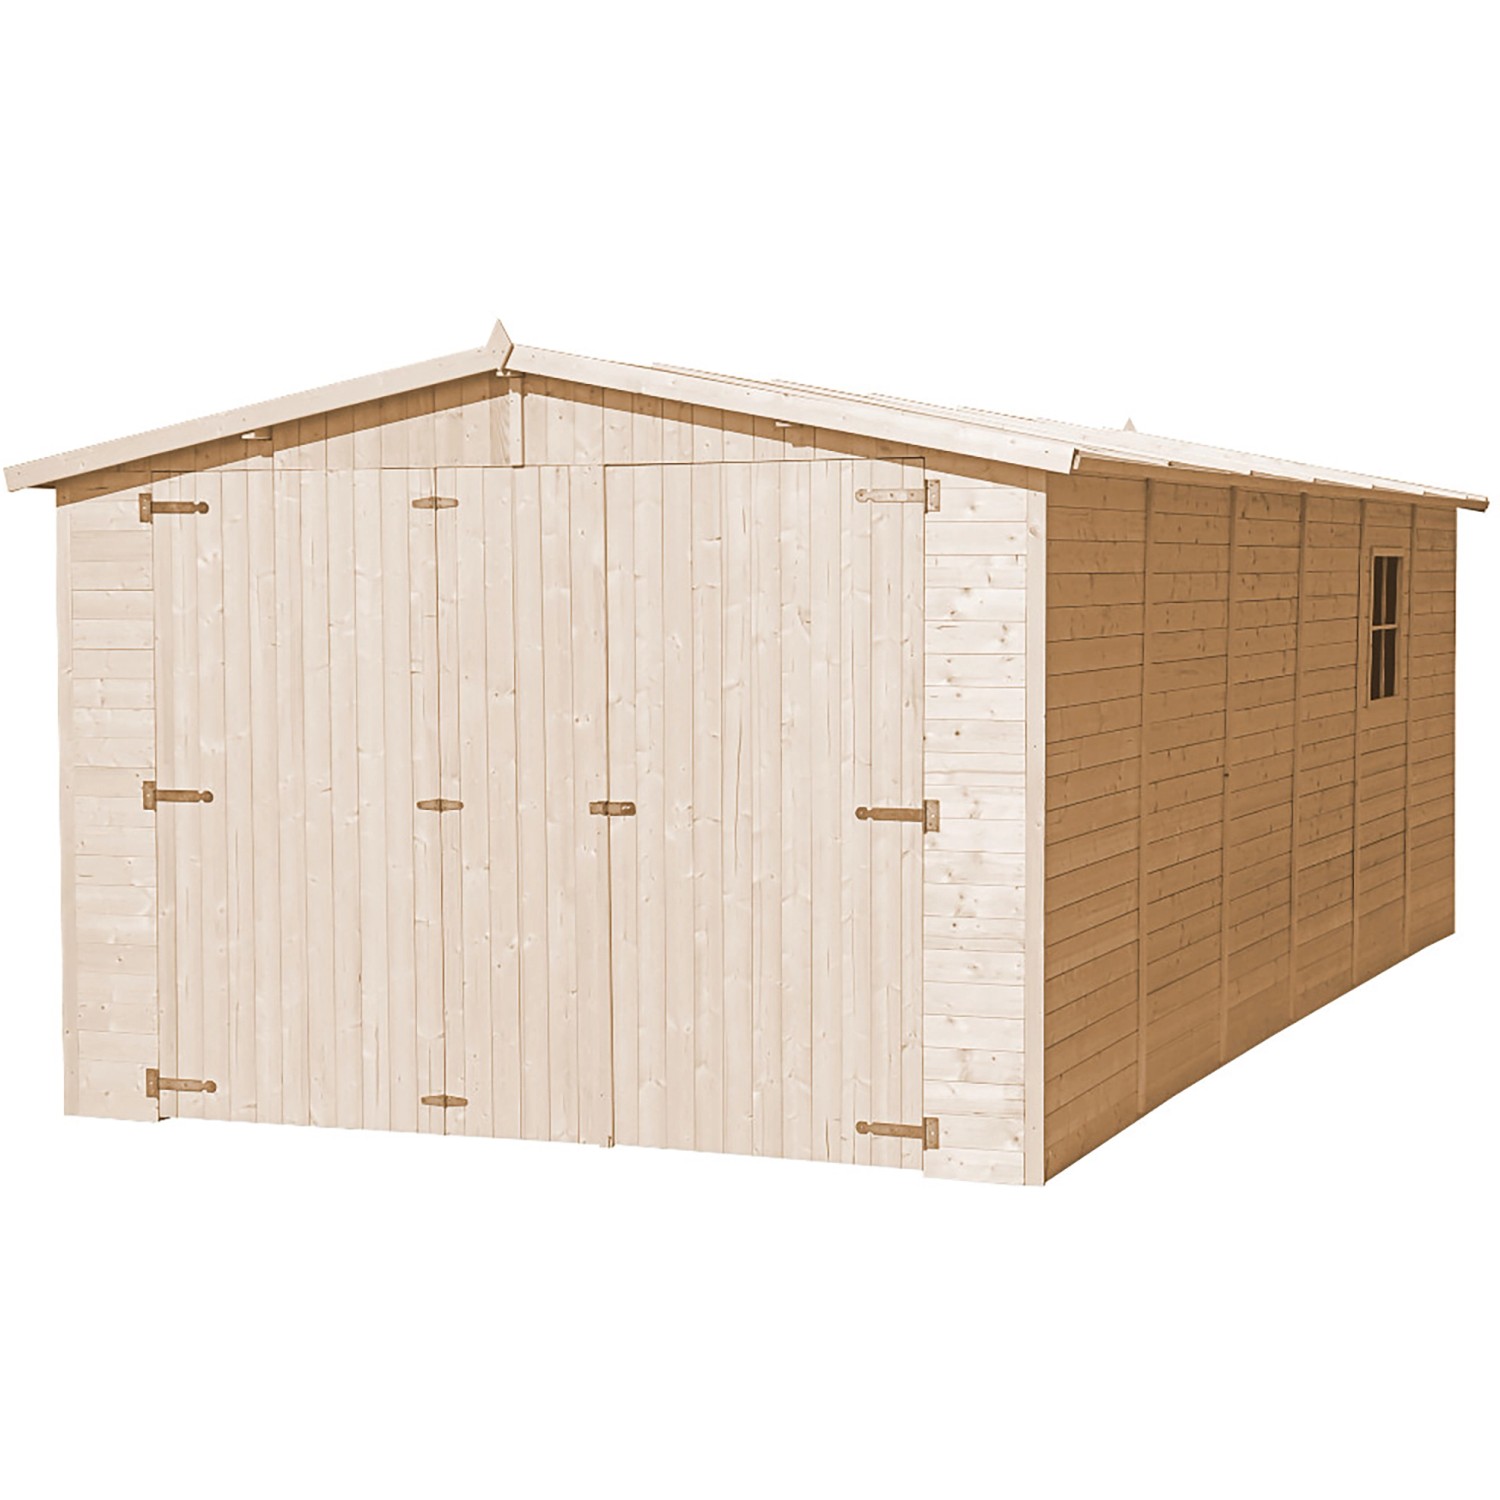 TIMBELA Holzgarage M102 18 m² mit Fenster ohne Boden